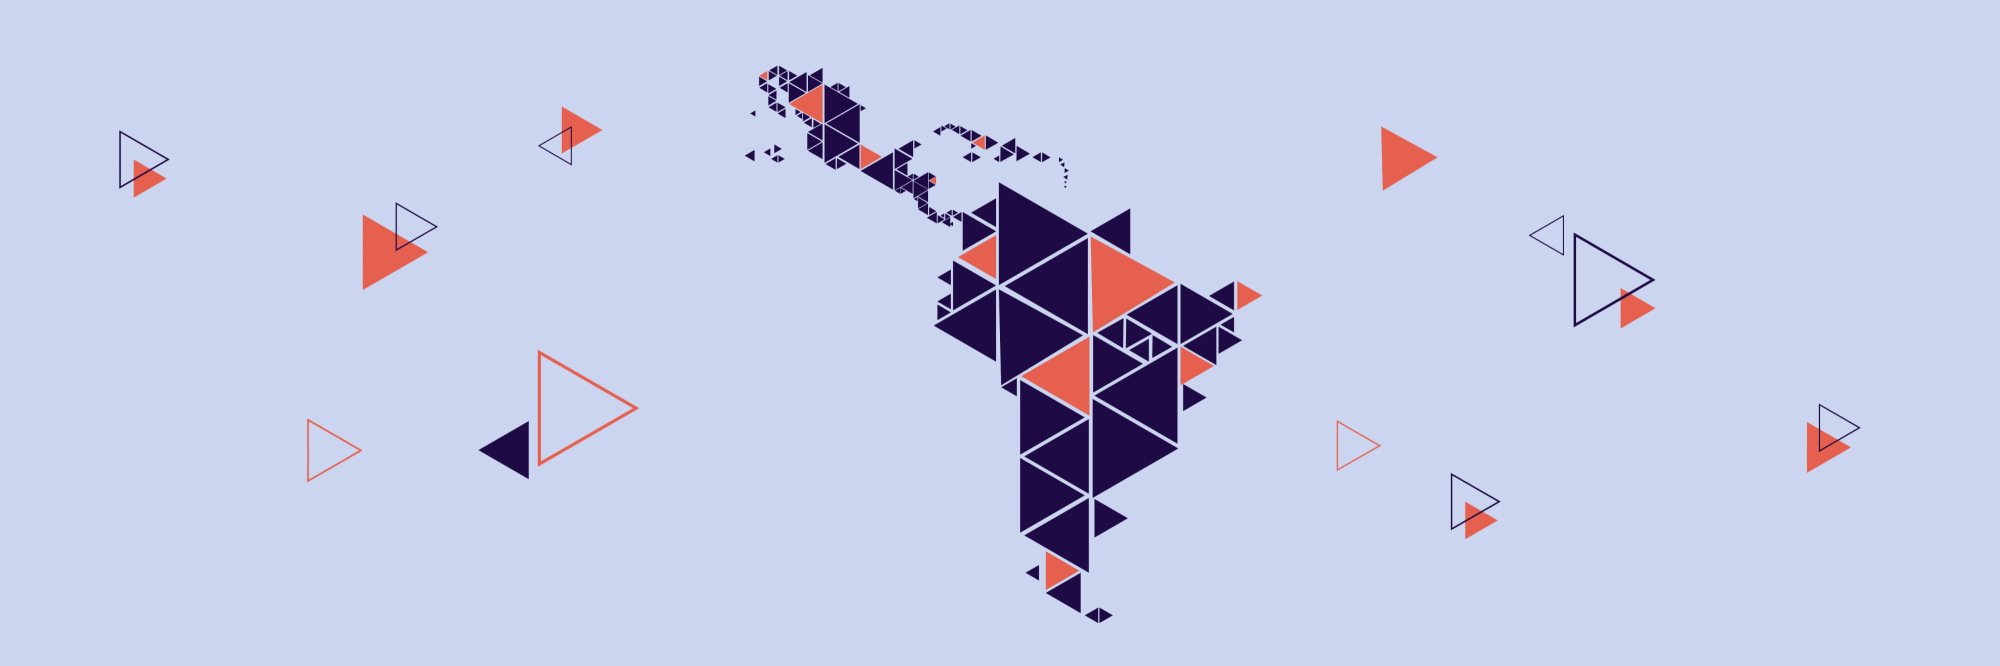 Empresas y trabajo decente en América Latina